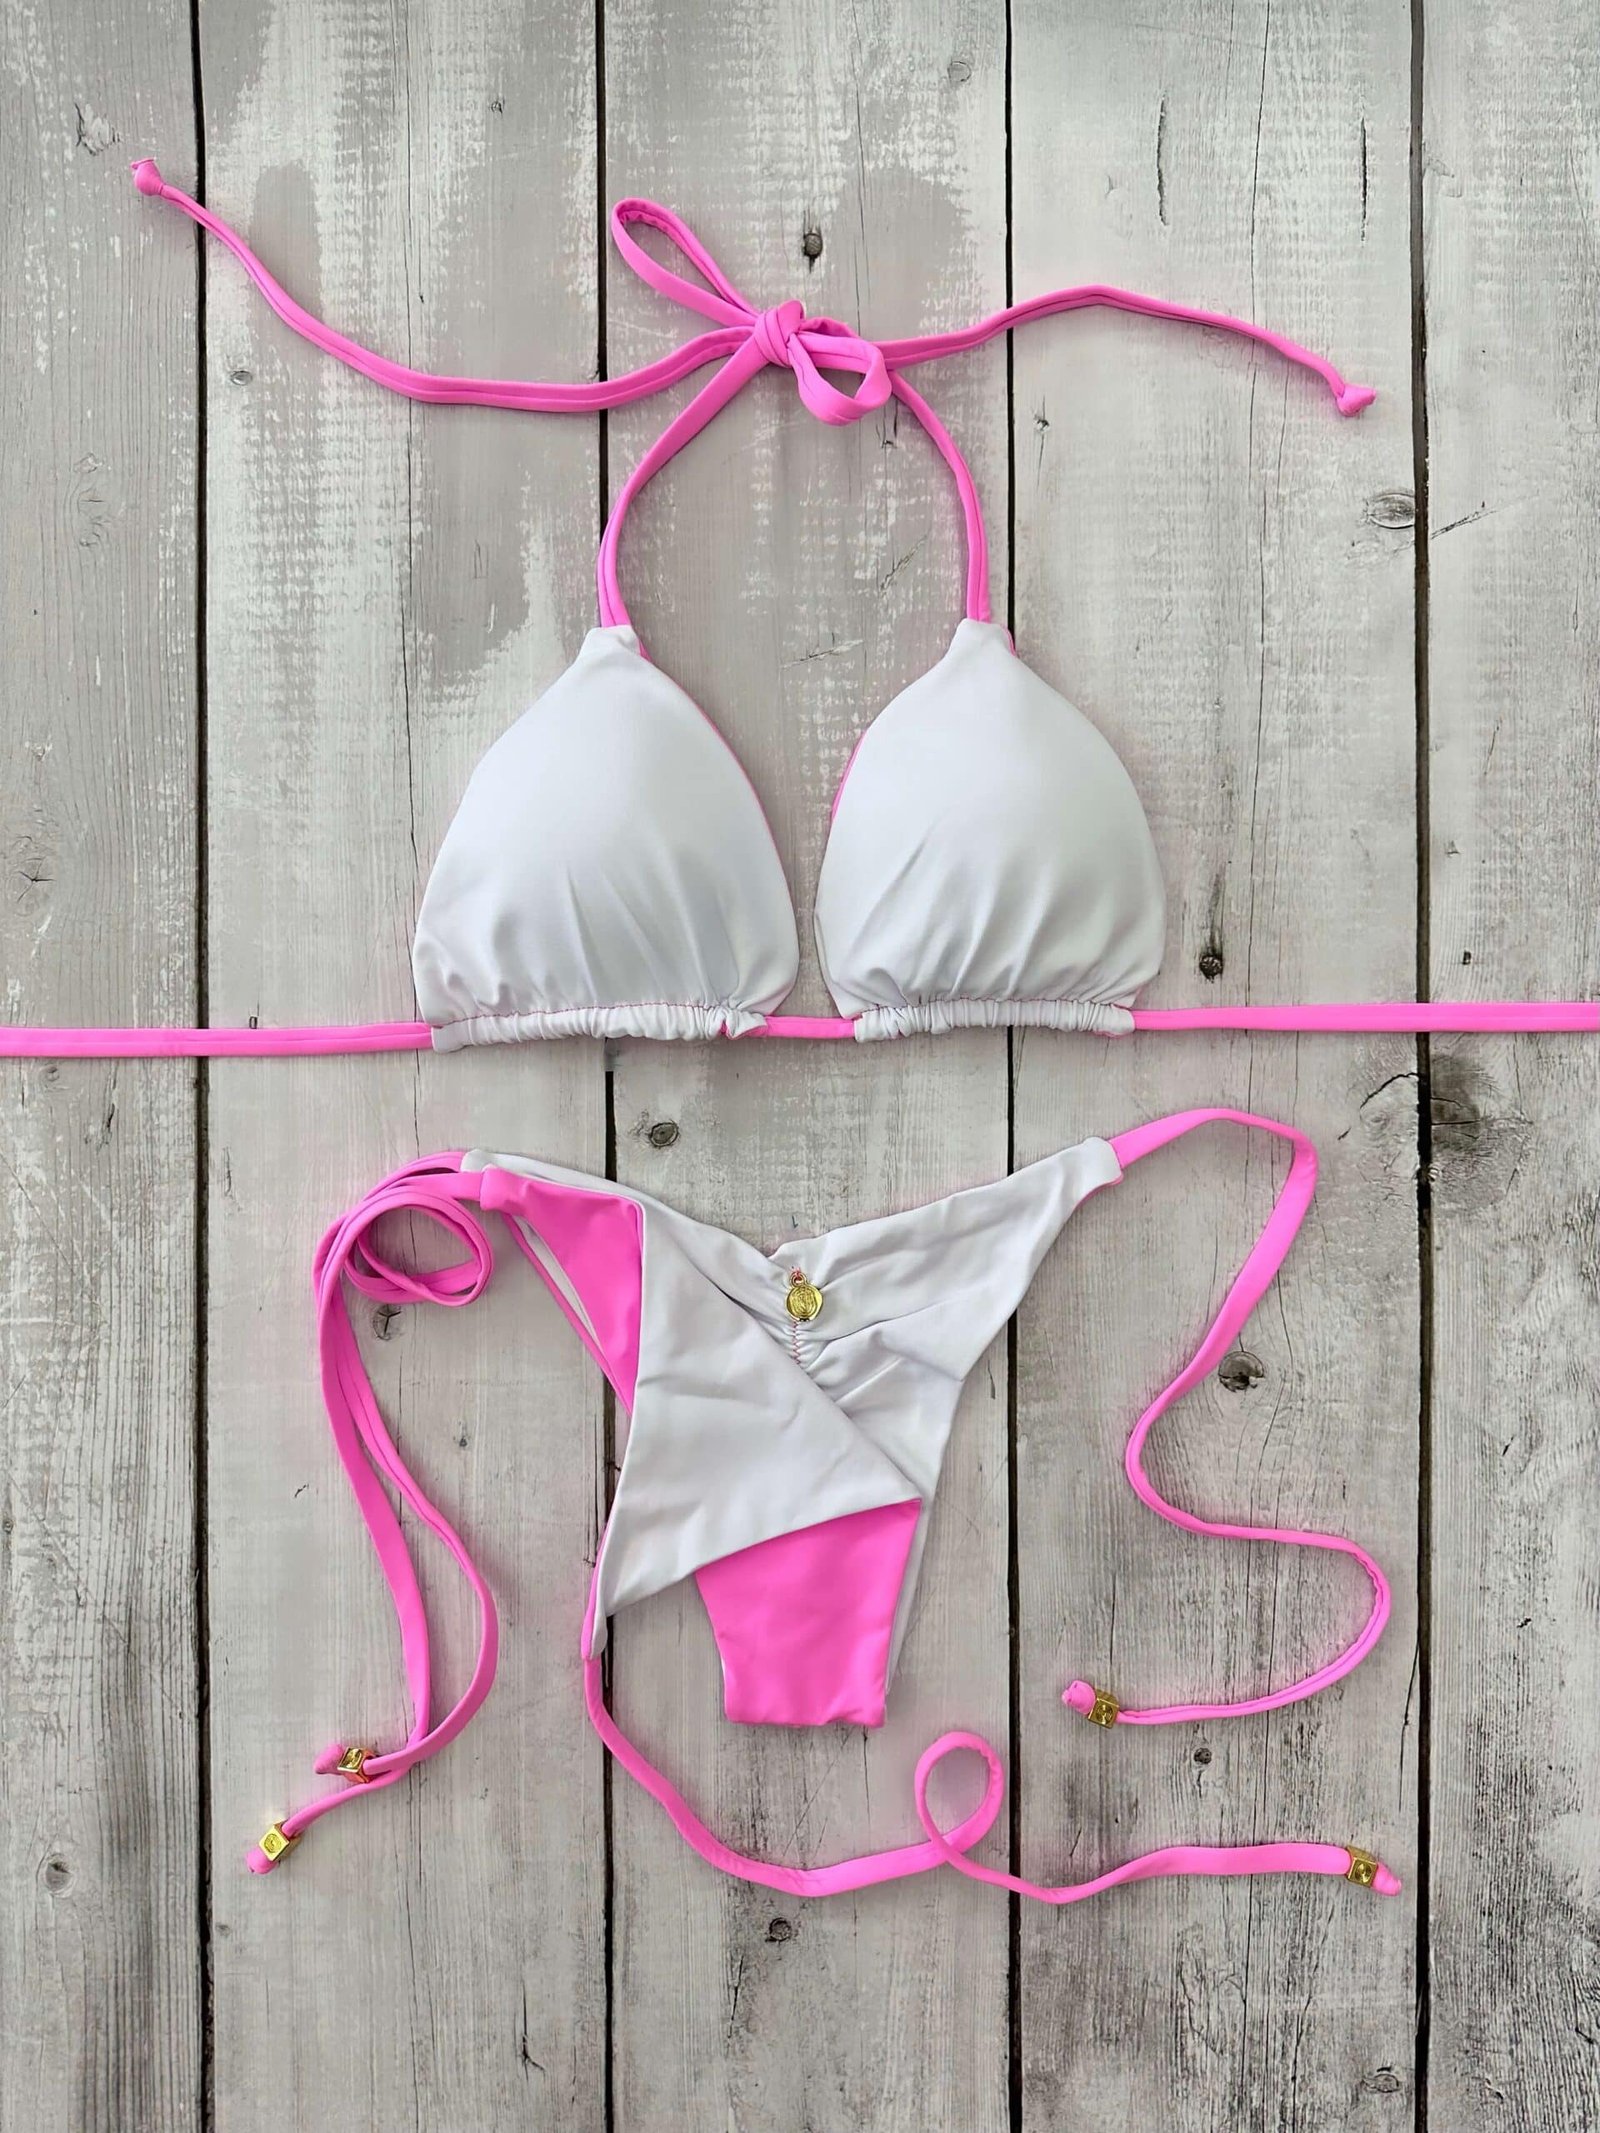 Rio Light Pink – White Bikini